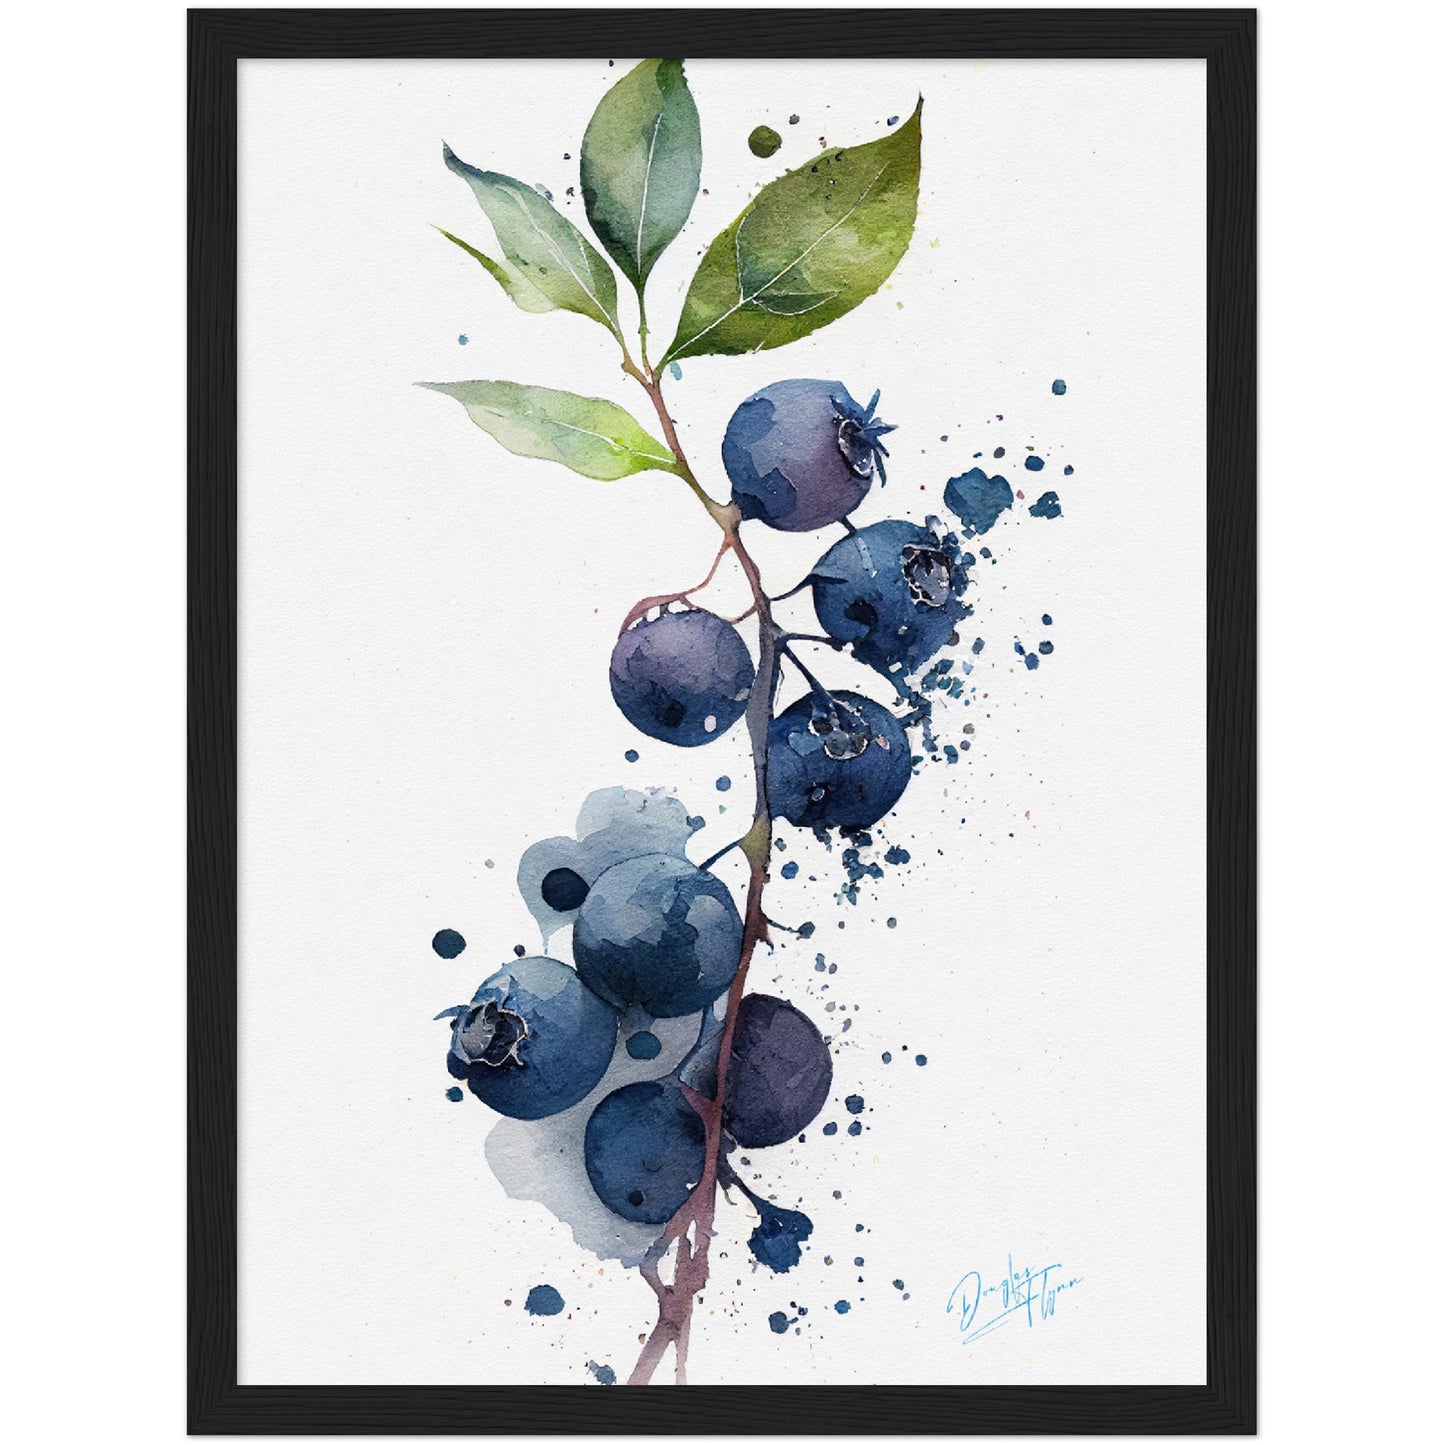 »Blueberry Feelings« retro poster